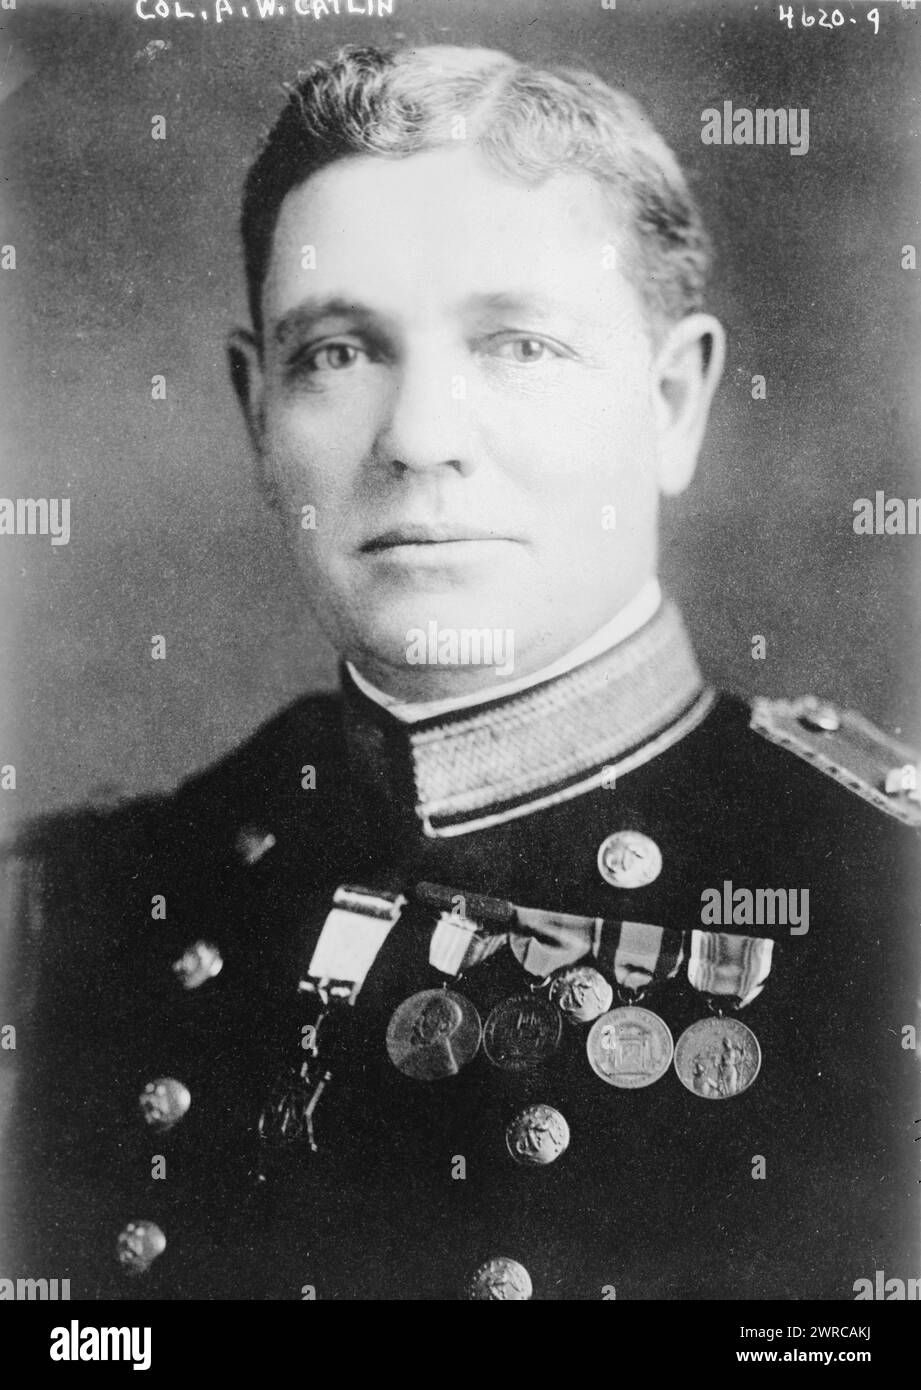 El coronel A.W. Catlin, fotografía muestra al general de brigada Albertus Wright Catlin (1868-1933) que sirvió en el Cuerpo de Marines de los Estados Unidos., 17 de junio de 1918, negativos de vidrio, 1 negativo: Vidrio Foto de stock